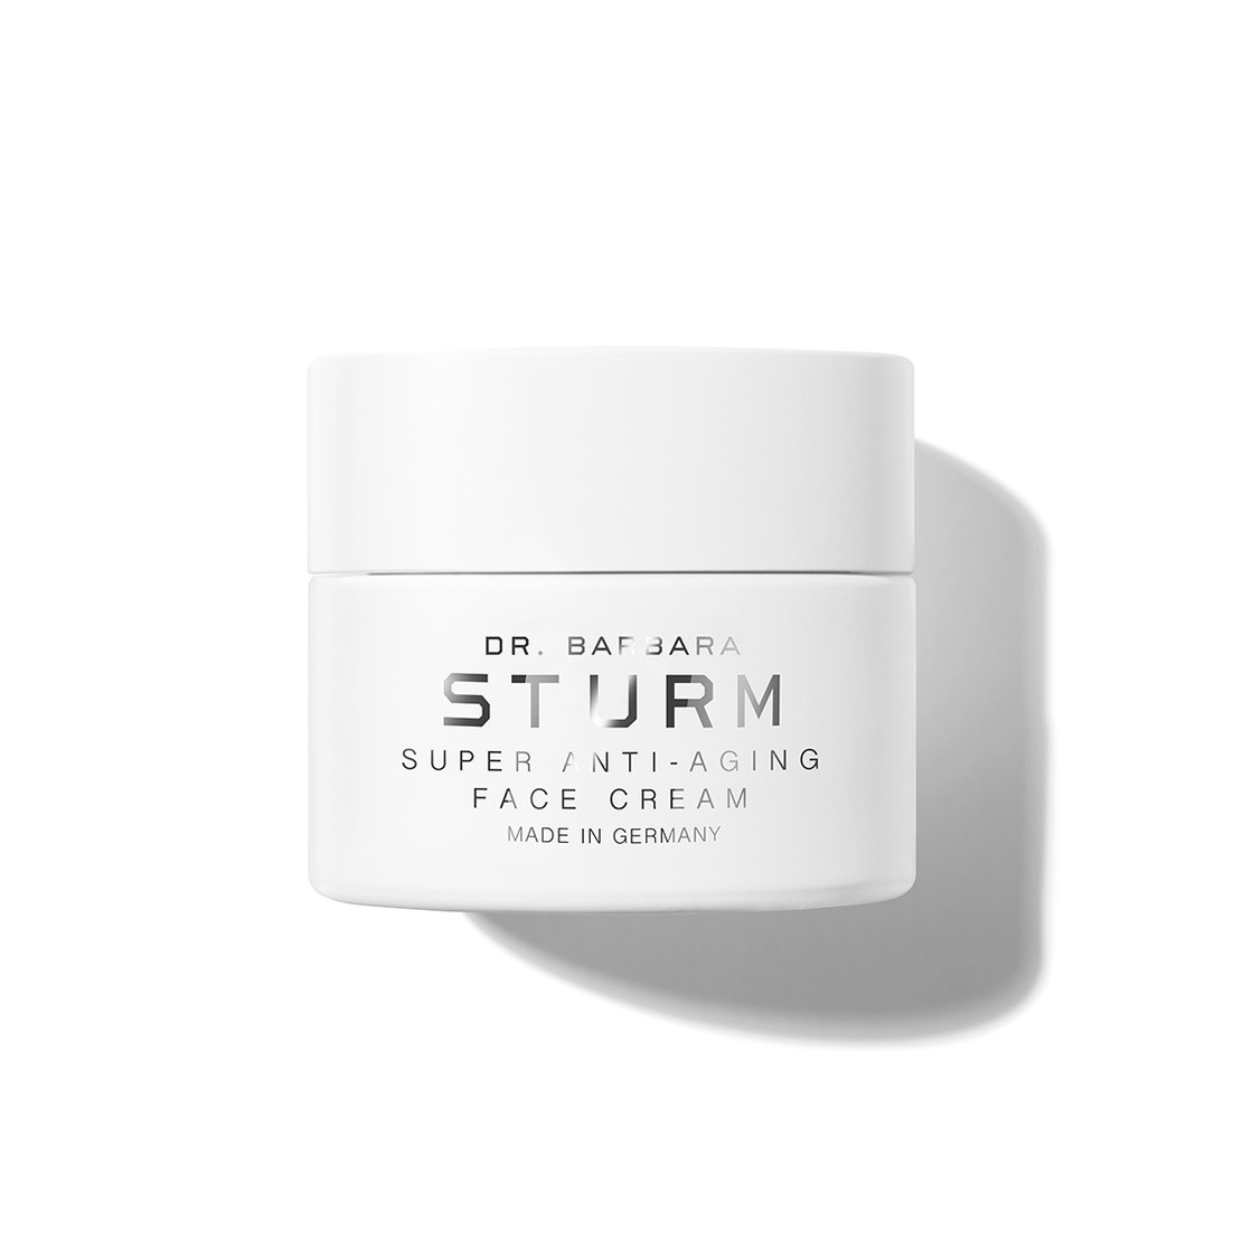 Super Anti Aging Face Cream